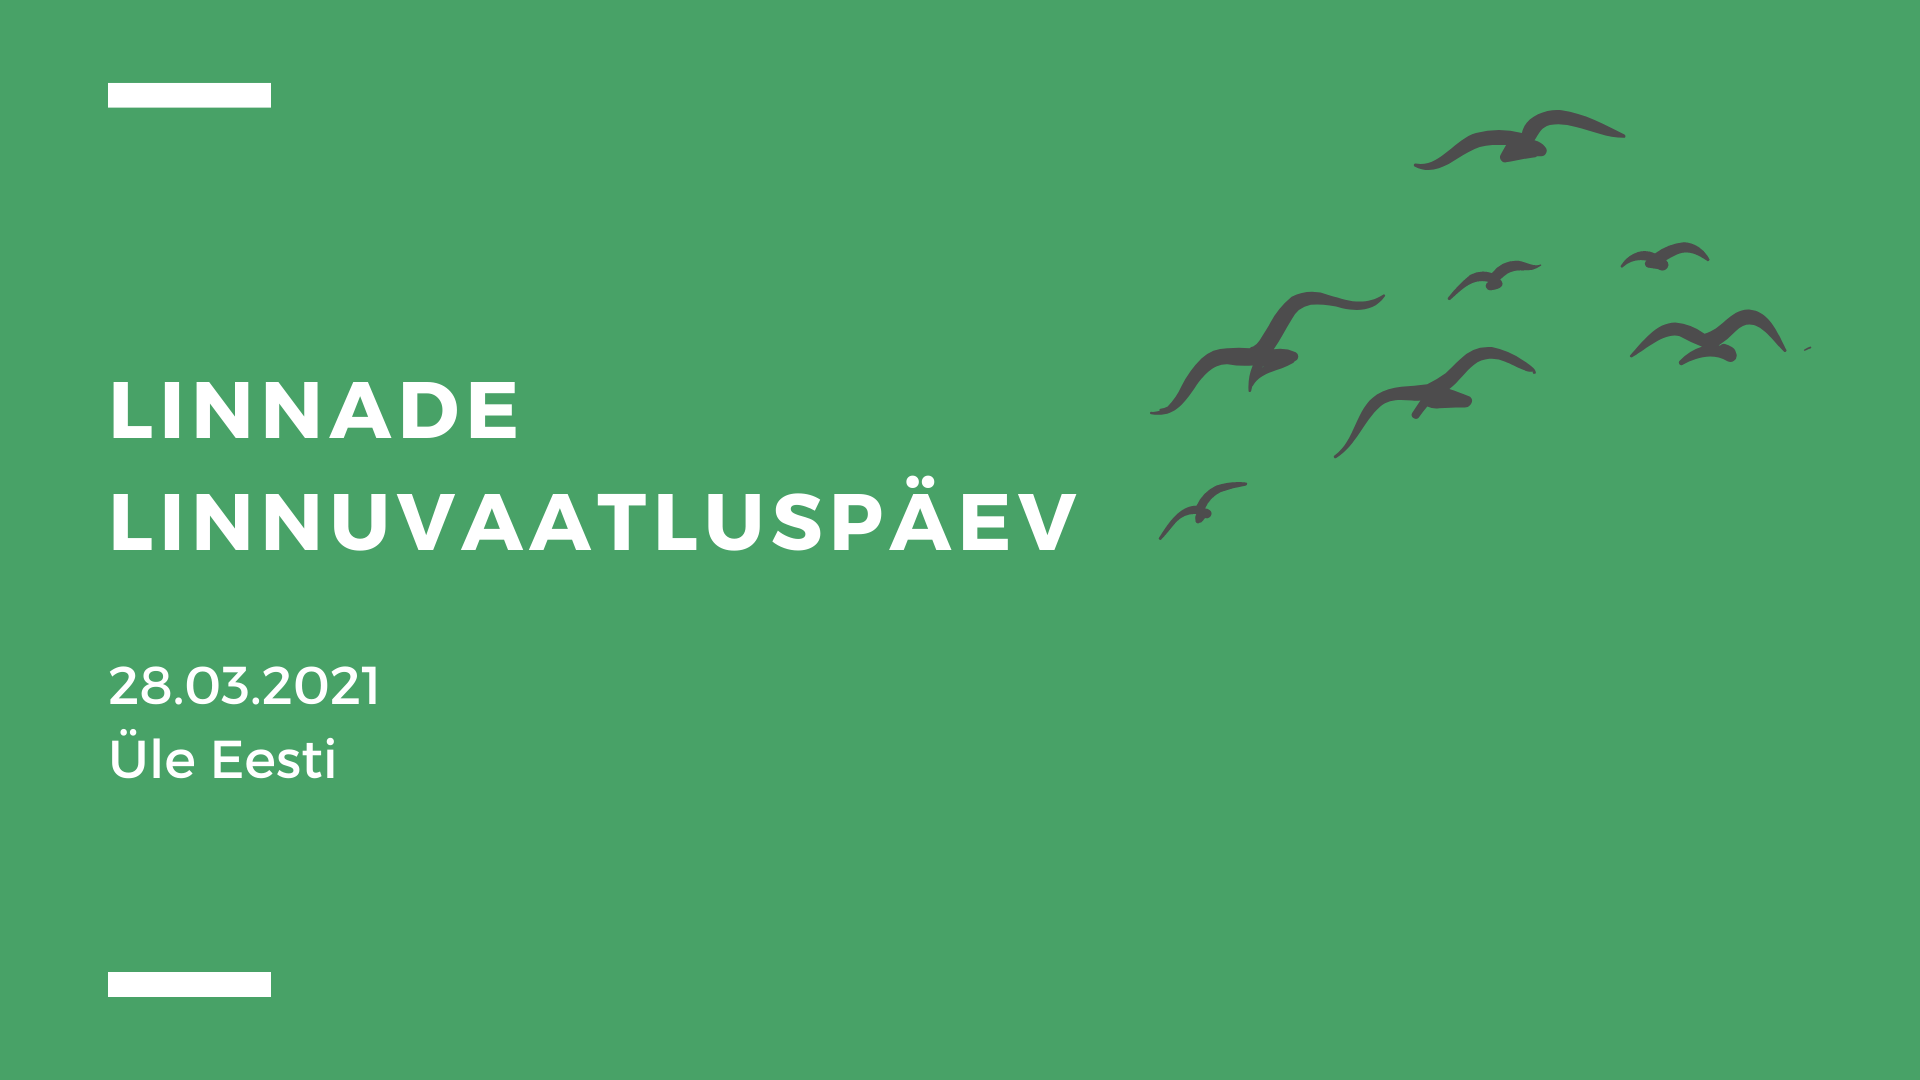 Linnade linnuvaatluspäev. Eesti Ornitoloogiaühing